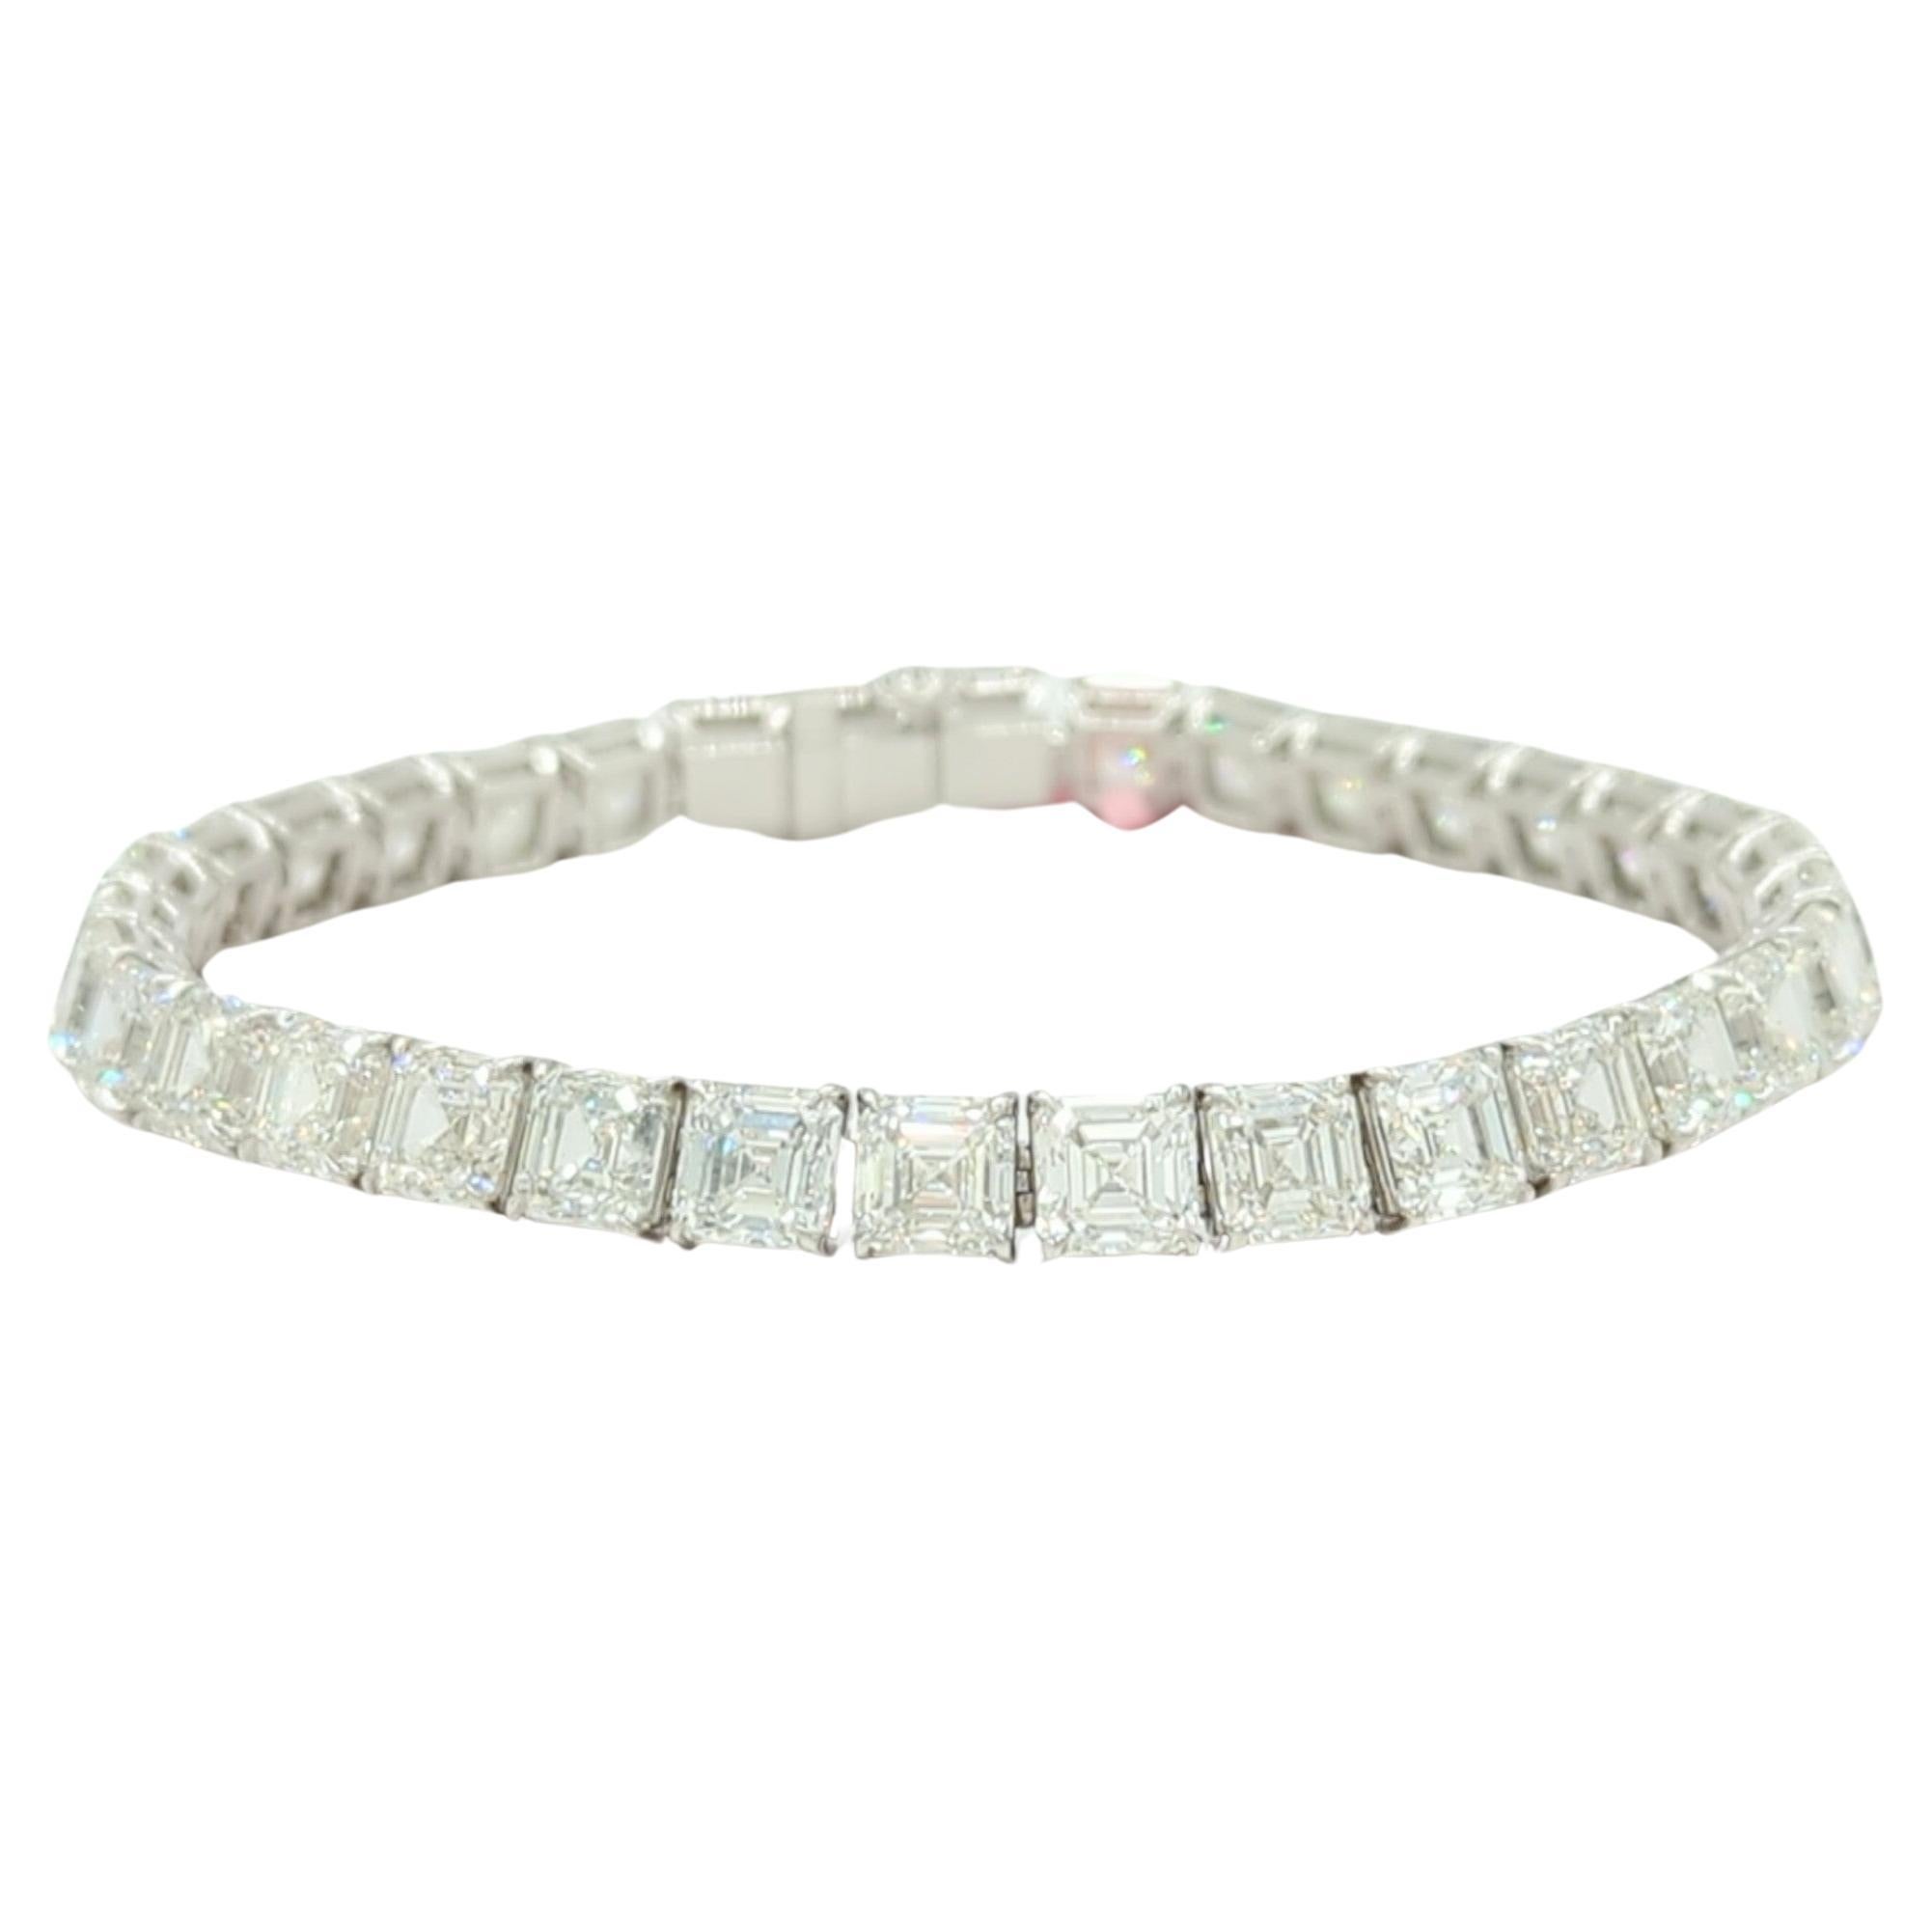 Bracelet tennis en or blanc 18 carats avec diamants blancs taille Asscher de 34,06 carats, certifiés GIA